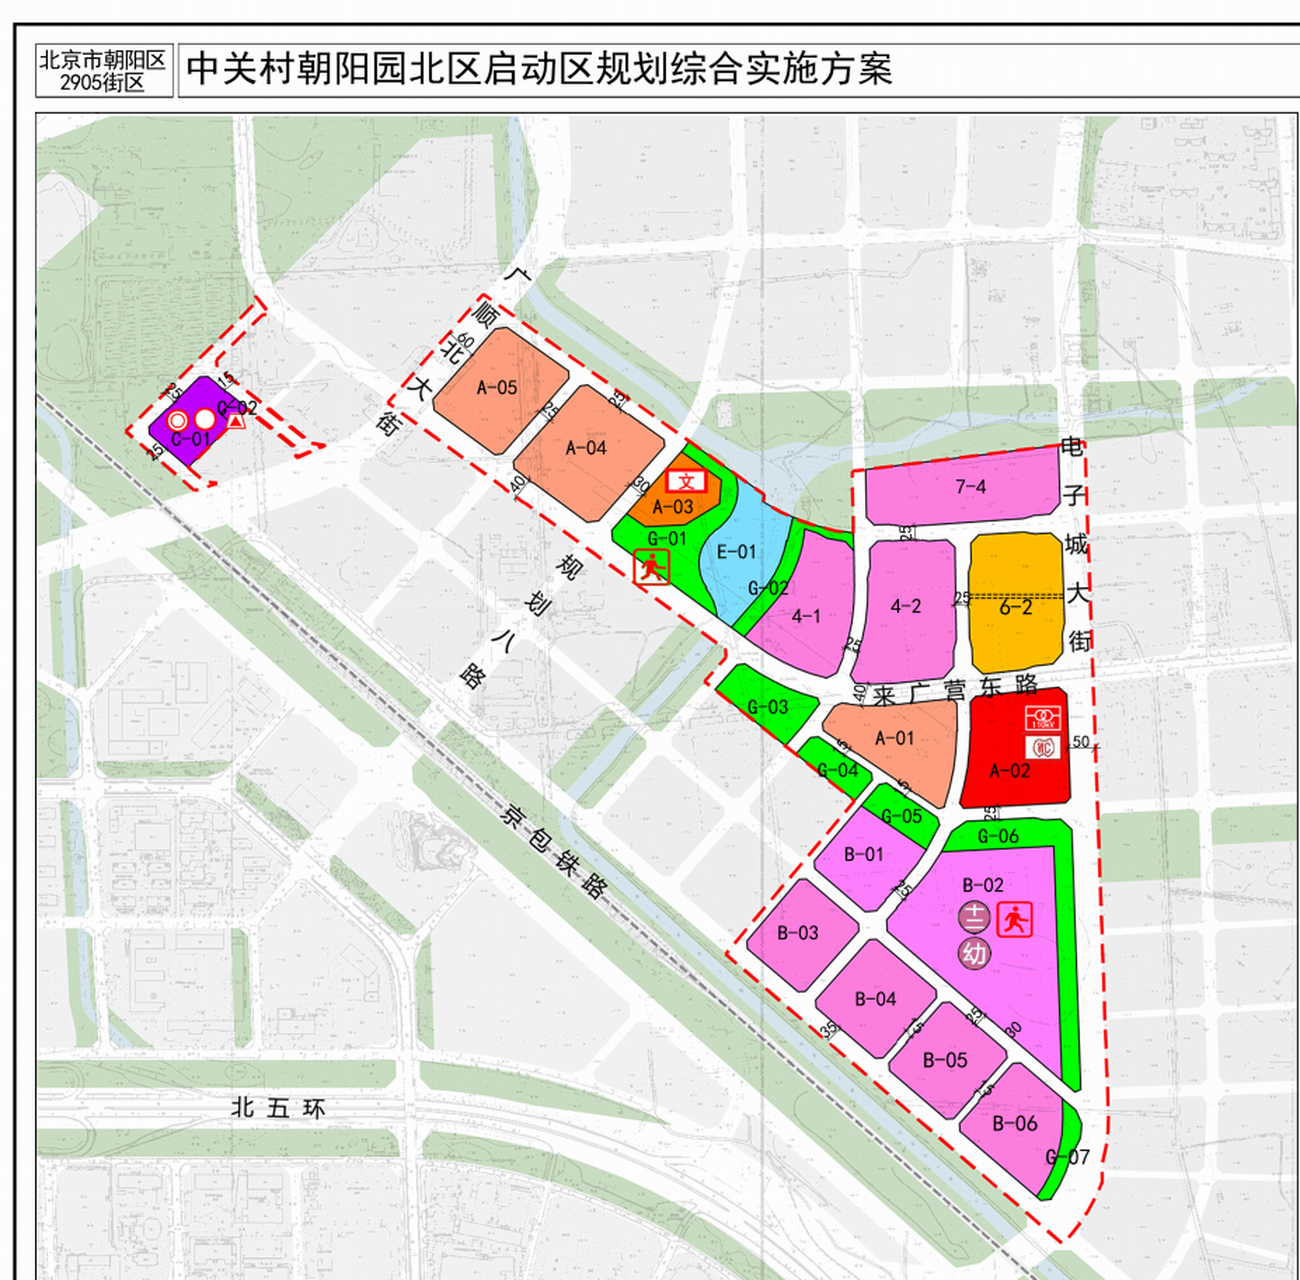 中关村朝阳园北区启动区规划综合实施方案也正式公示,规划图最新出炉!